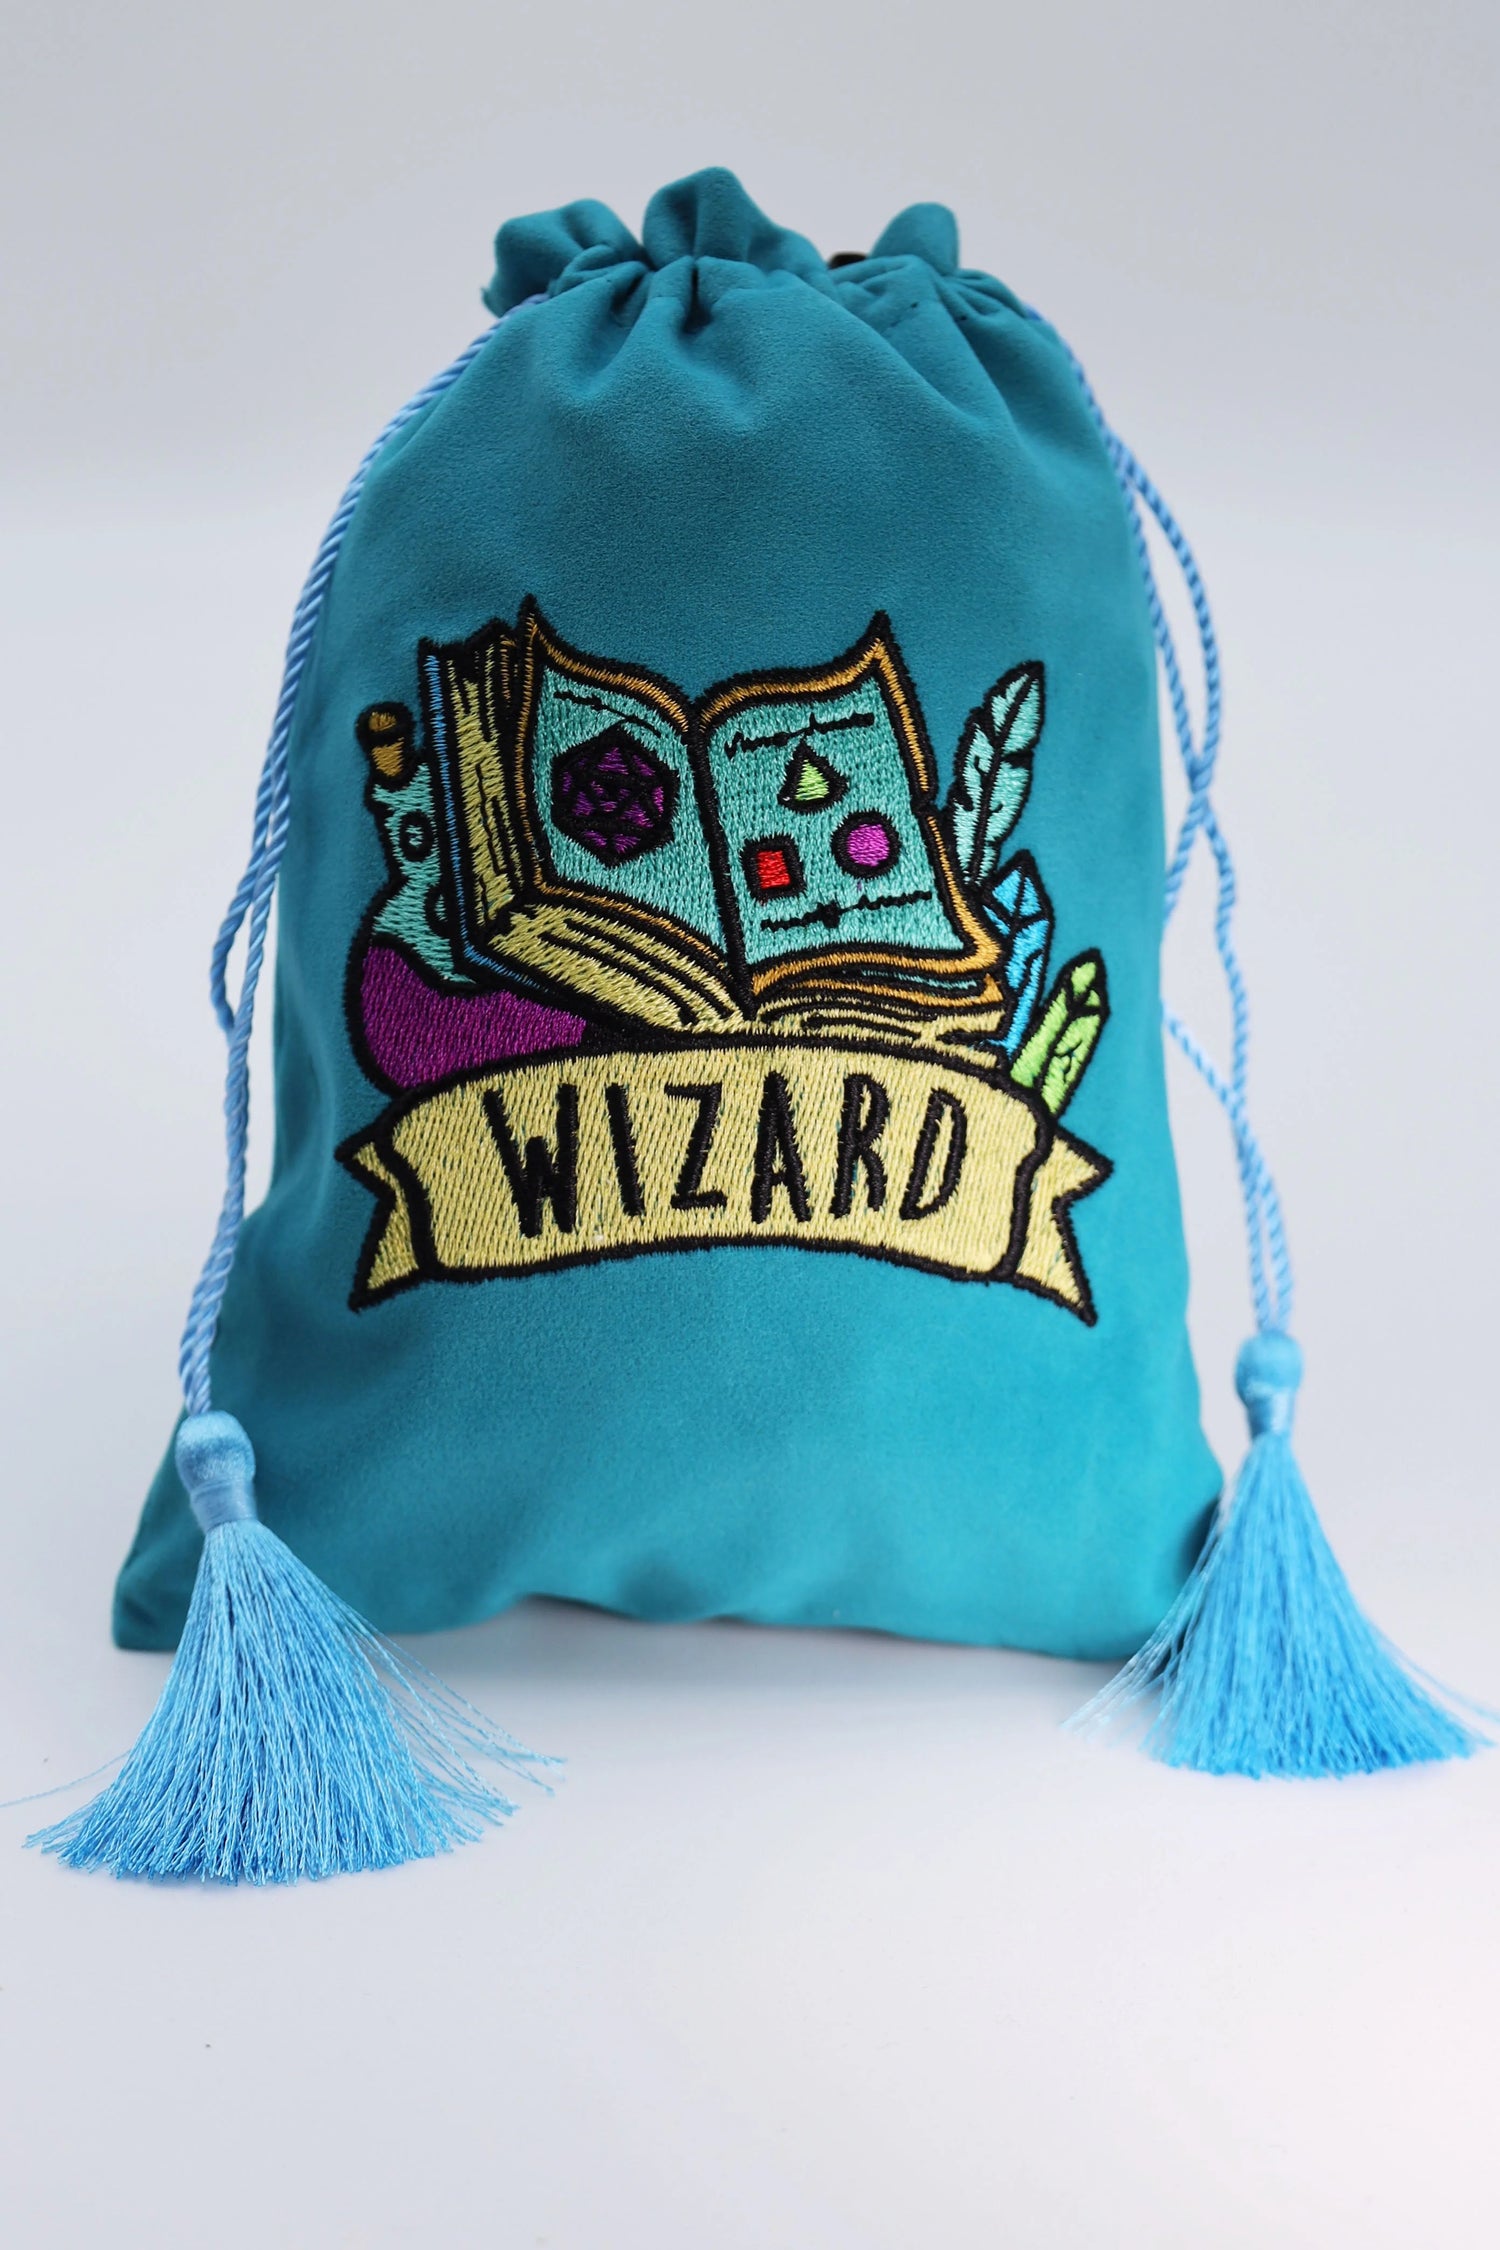 Dice Bag - Wizard